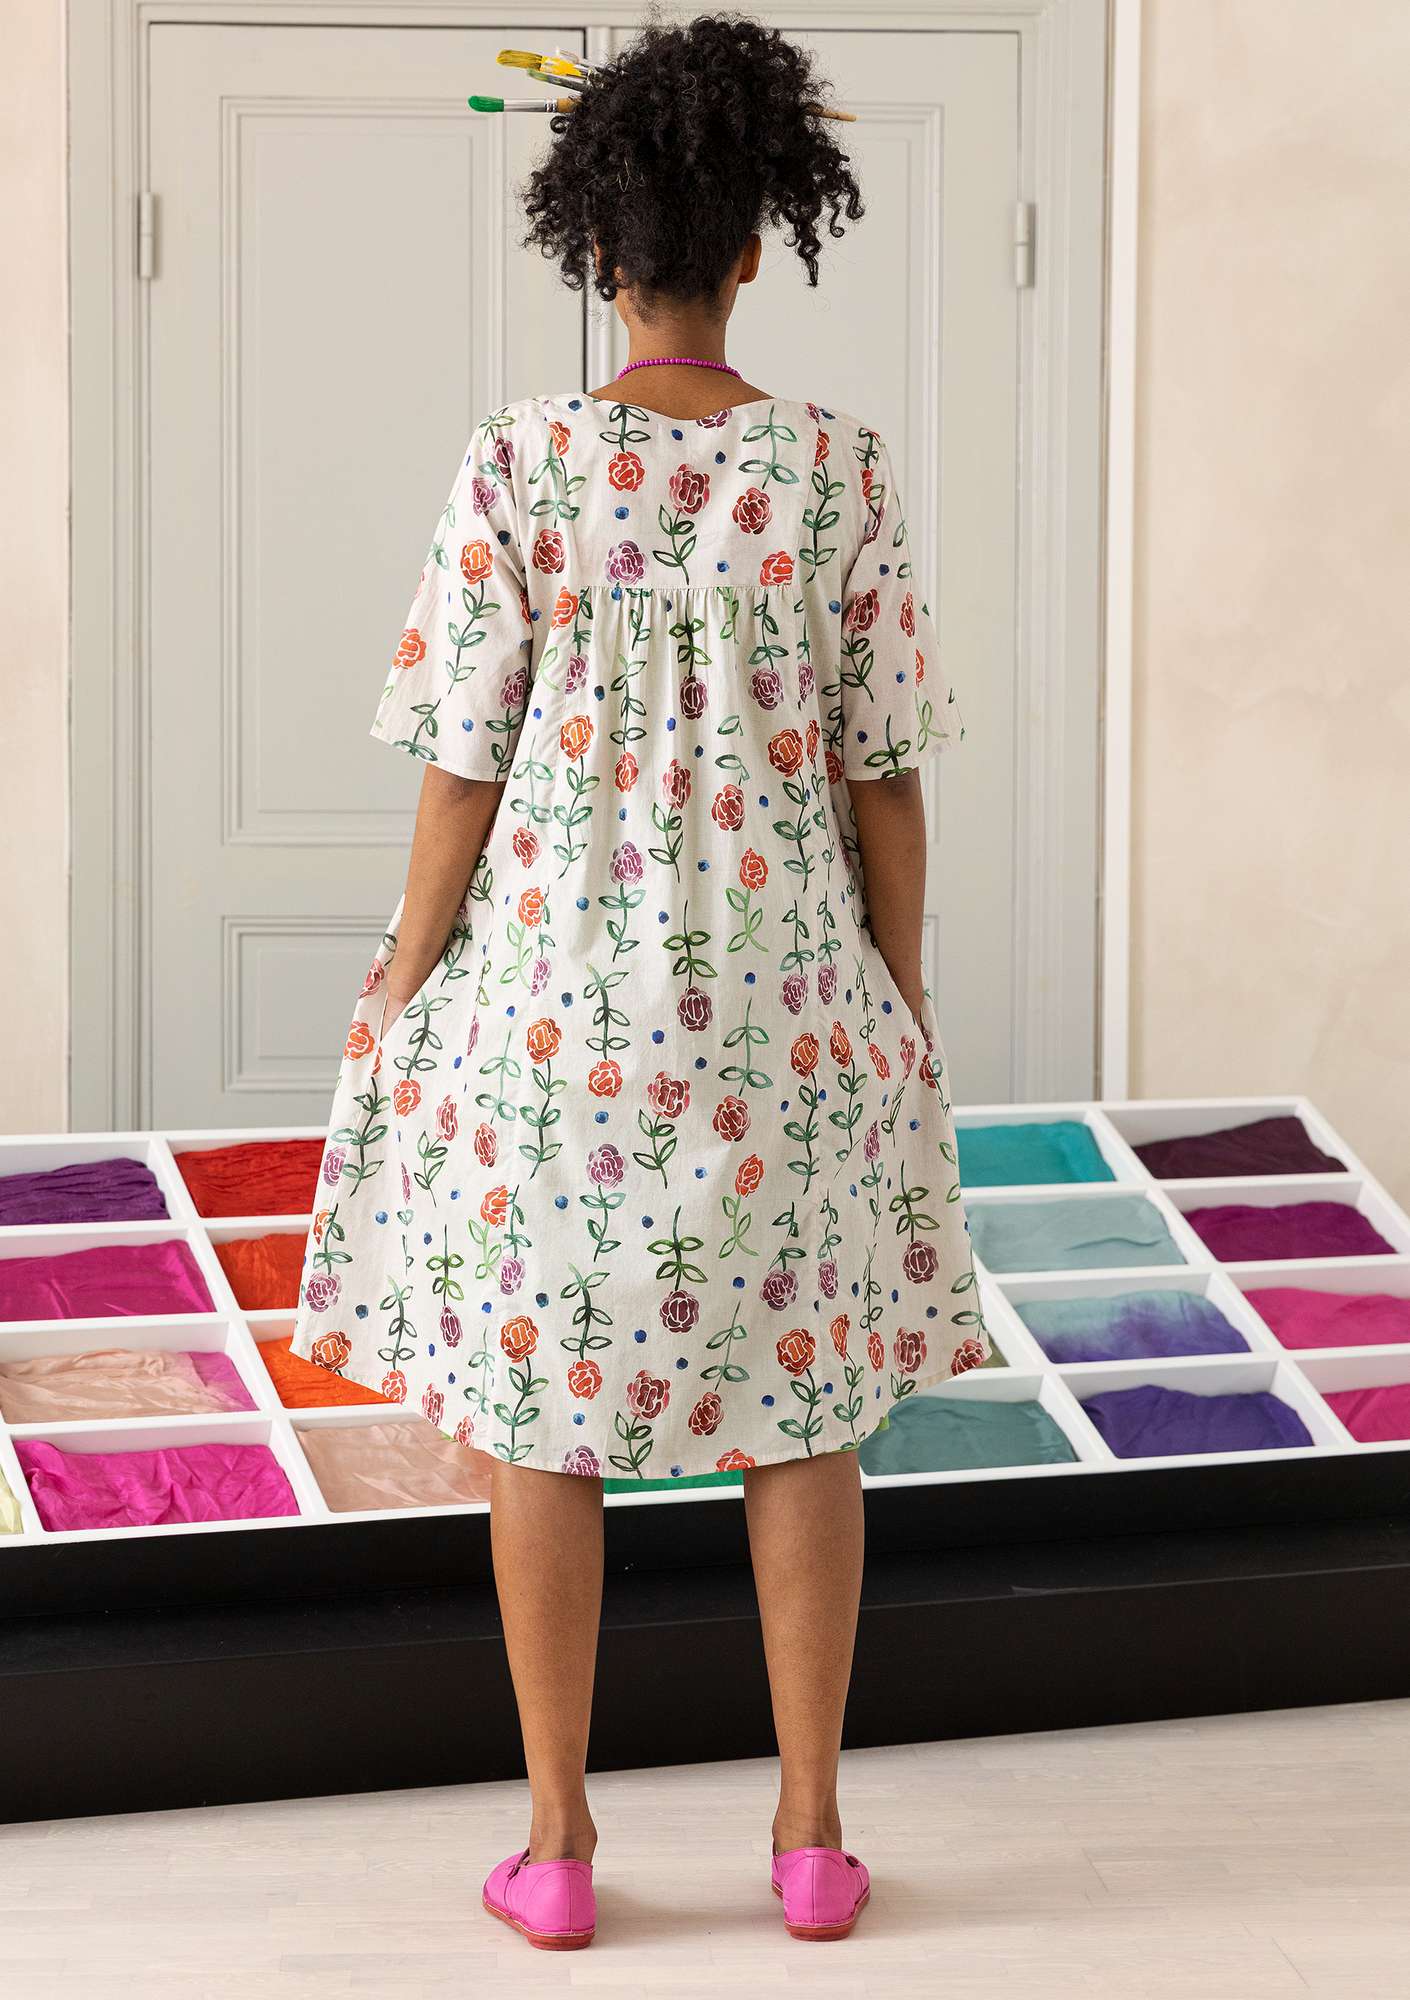 Vävd klänning  Acapella  i ekologisk bomull flerfärgad/mönstrad